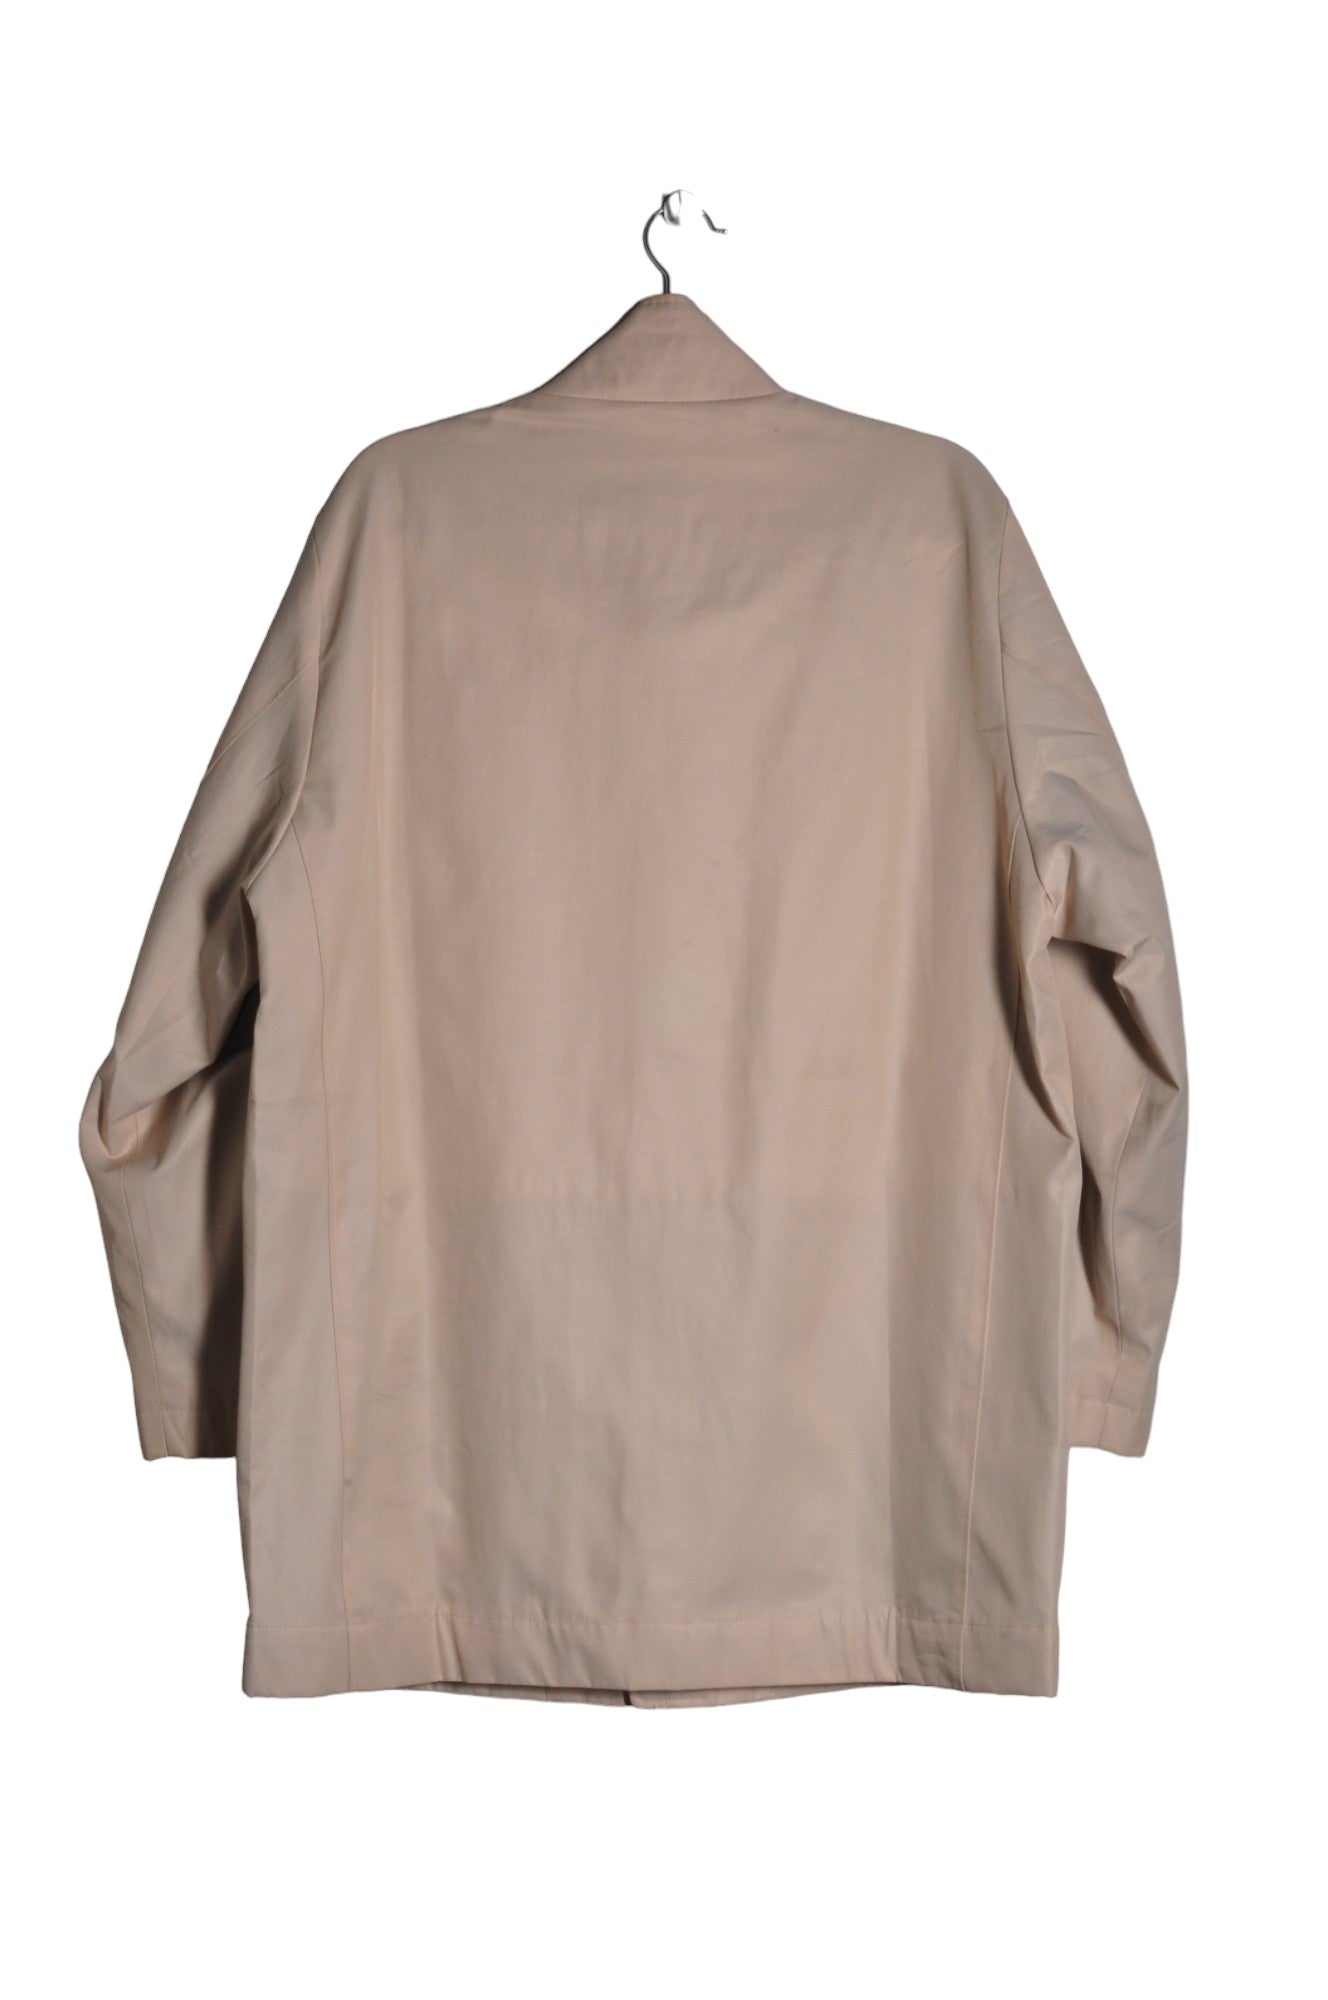 PERRY ELLIS Women Coats Regular fit in Beige - Size XXL | 18 $ KOOP